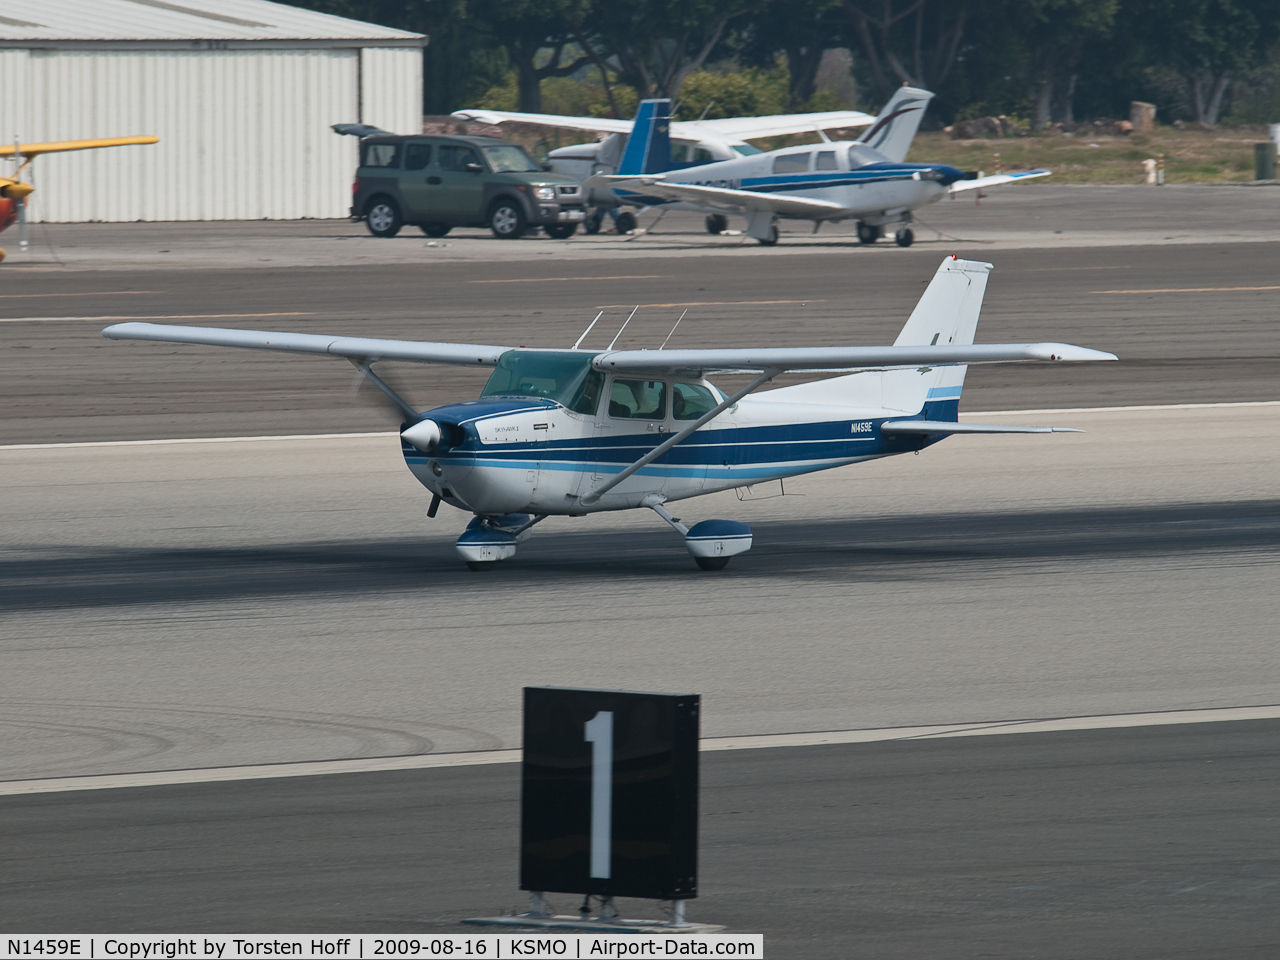 N1459E, 1978 Cessna 172N C/N 17271007, N1459E departing from RWY 21